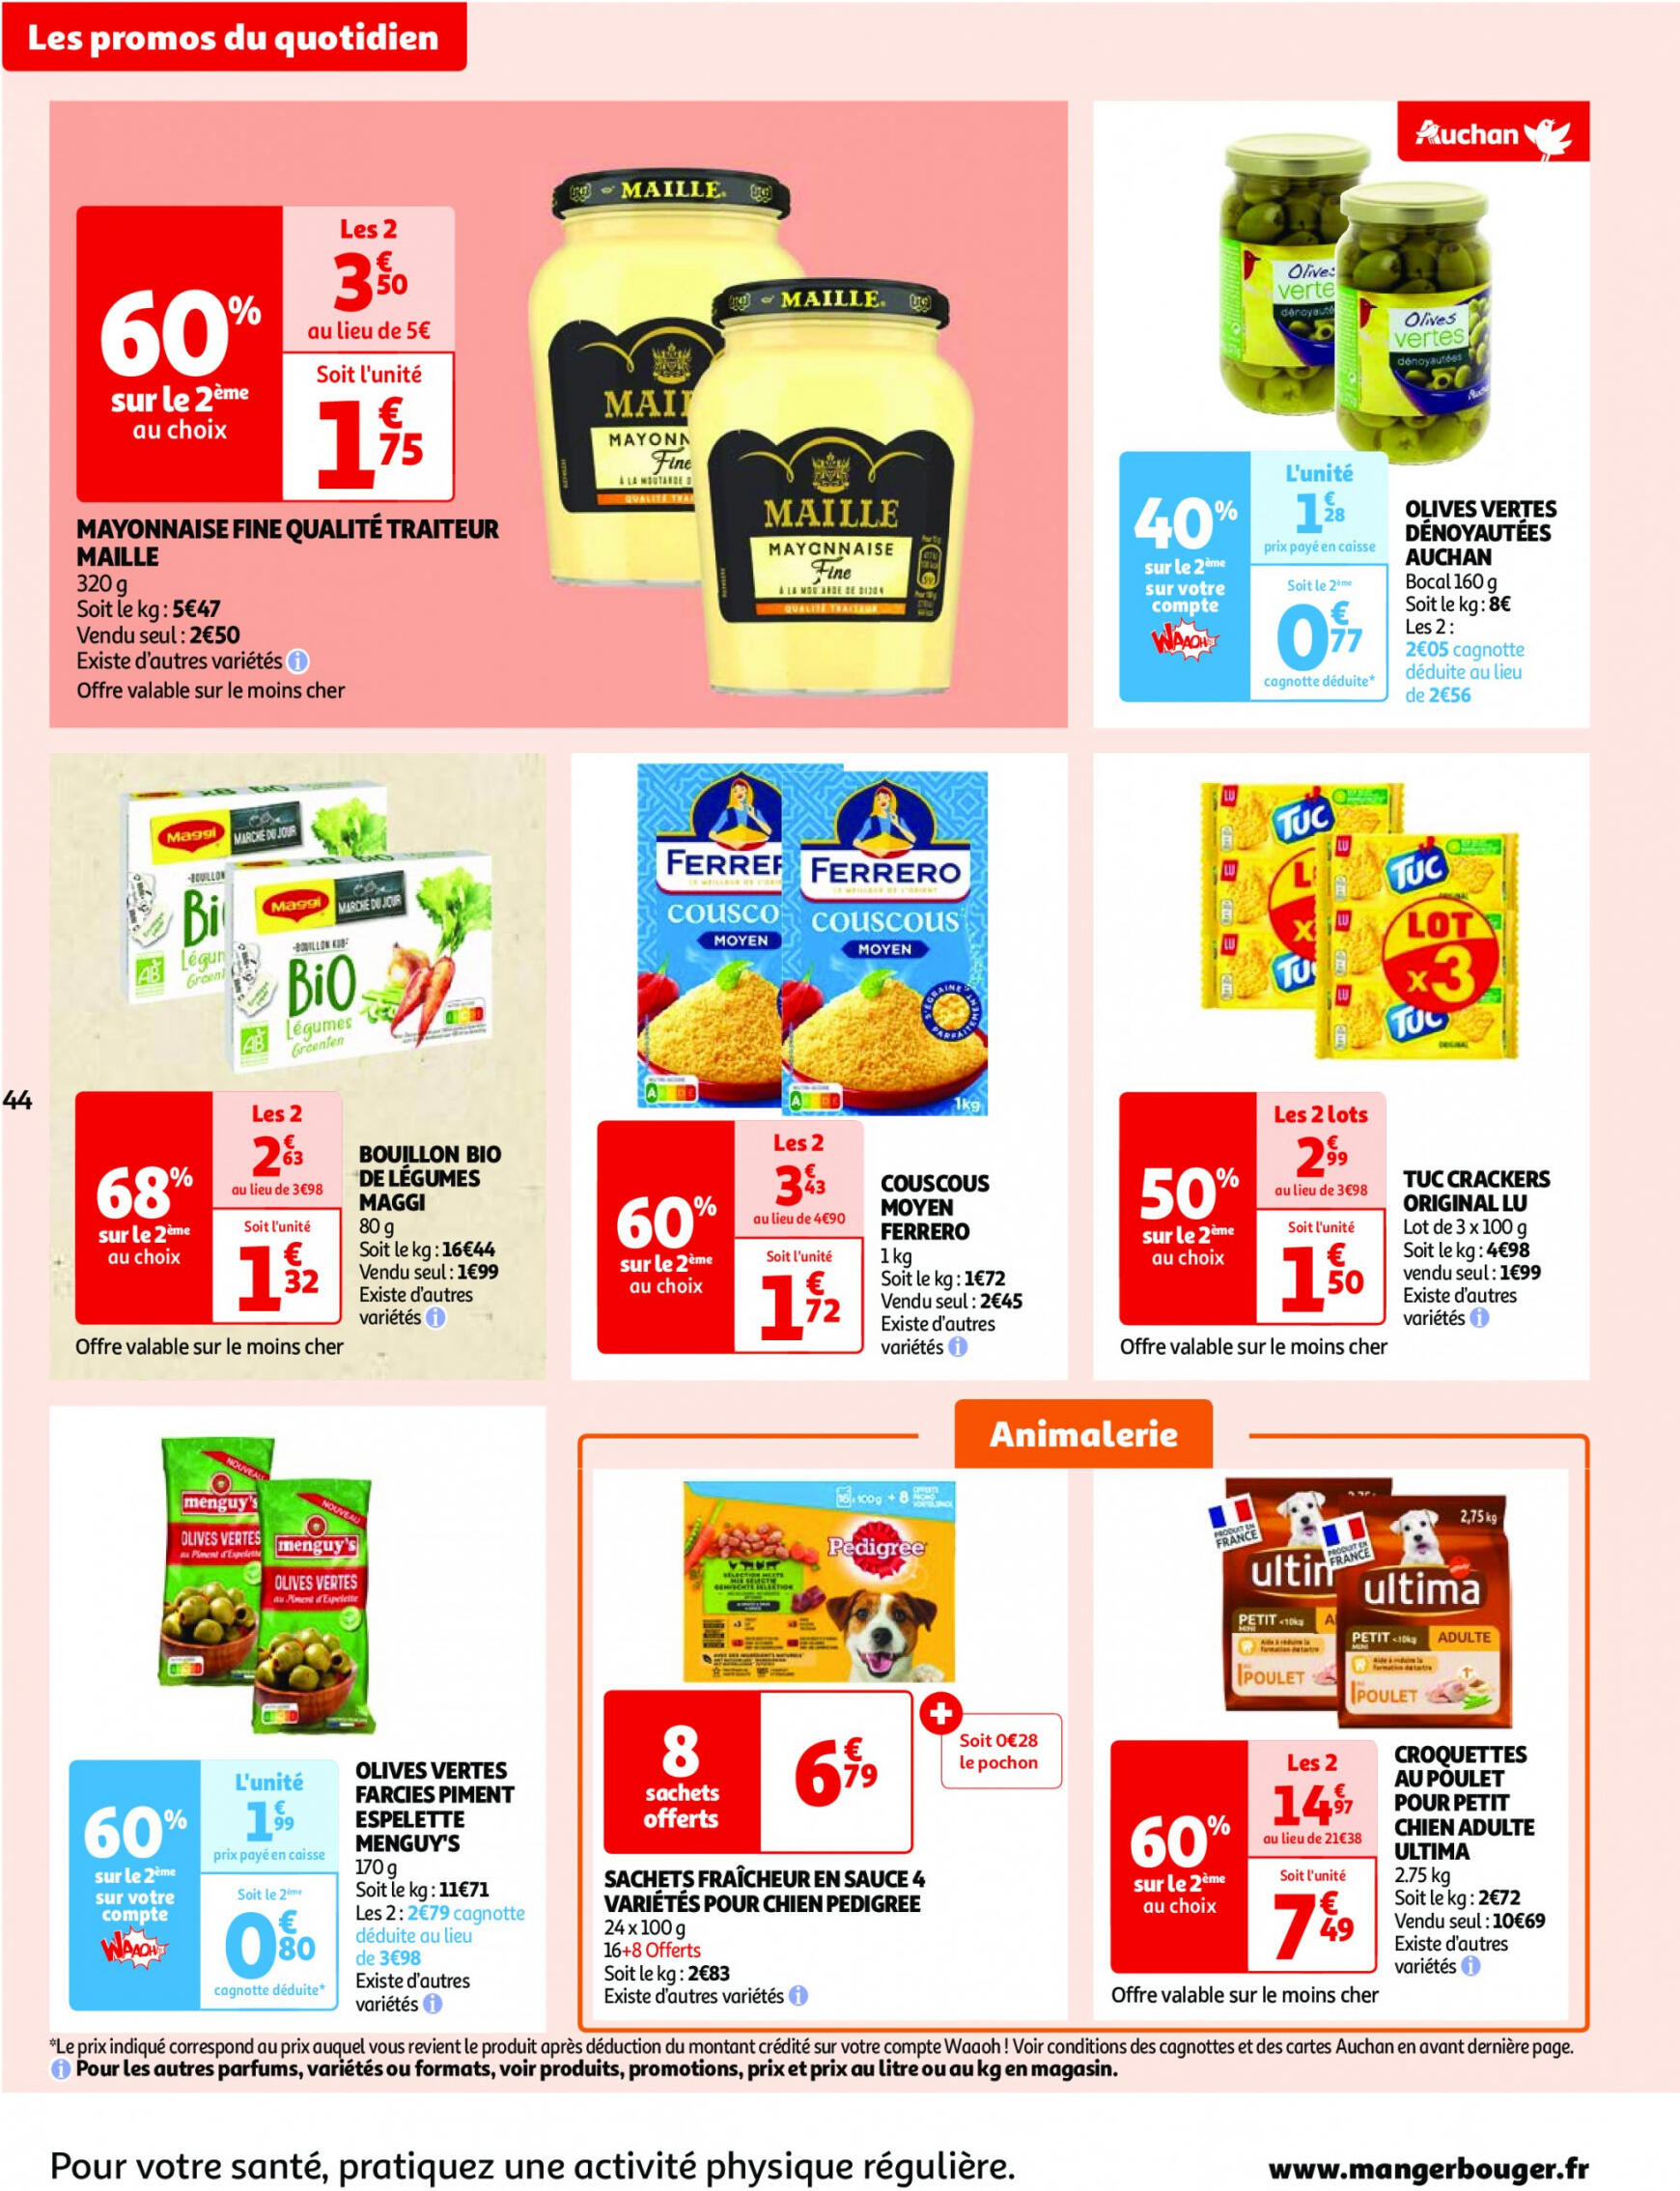 auchan - Prospectus Auchan actuel 30.04. - 06.05. - page: 44